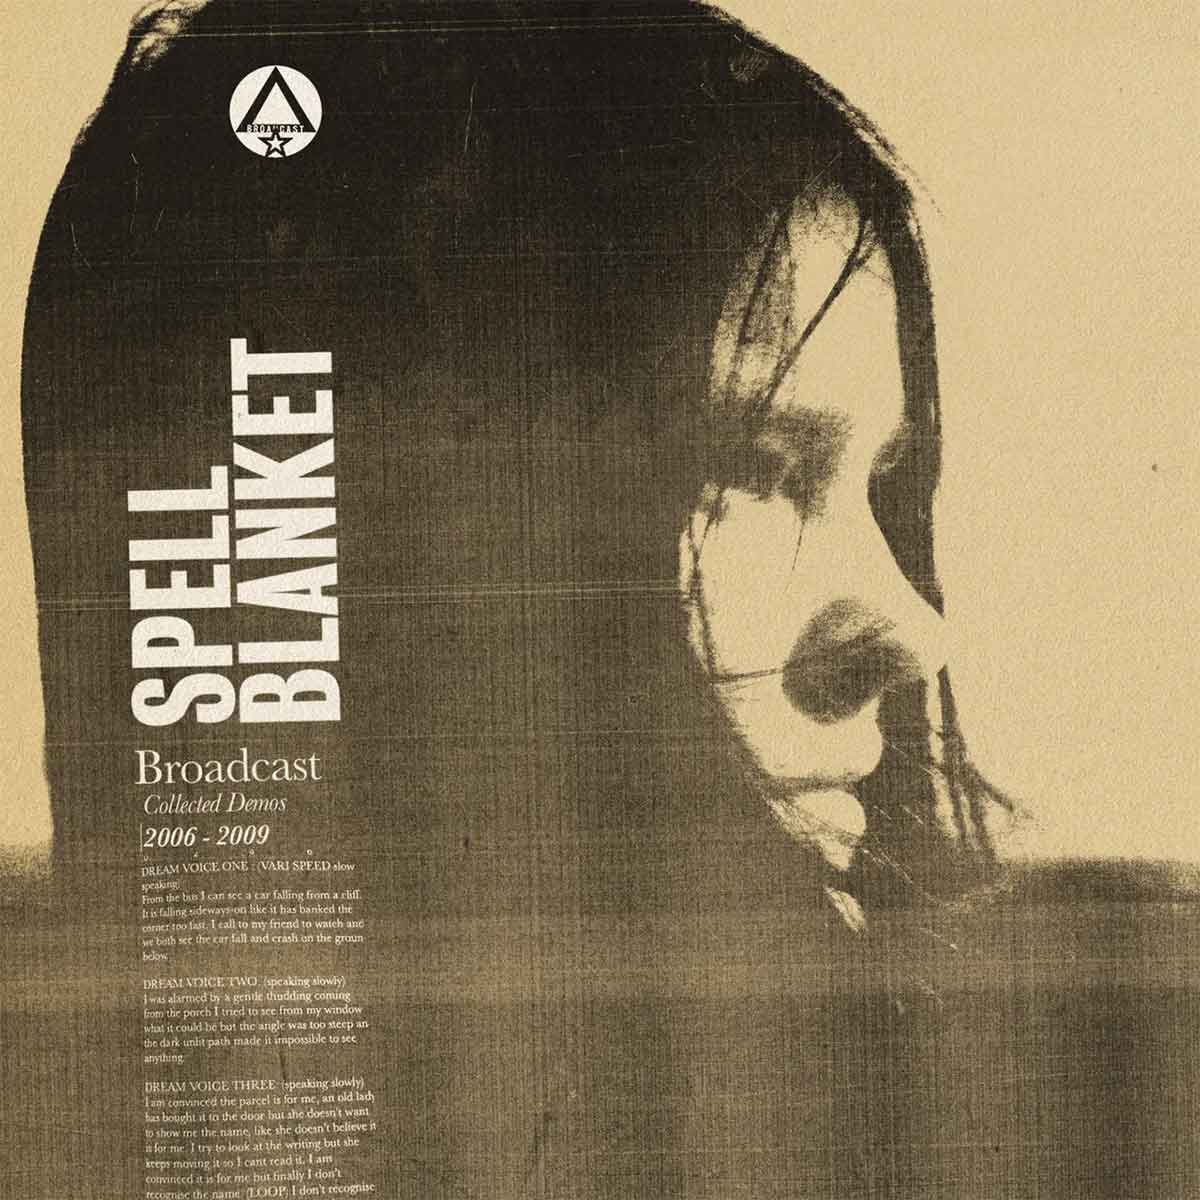 Tapa de "Spell Blanket - Collected Demos 2006 - 2009", disco de Broadcast